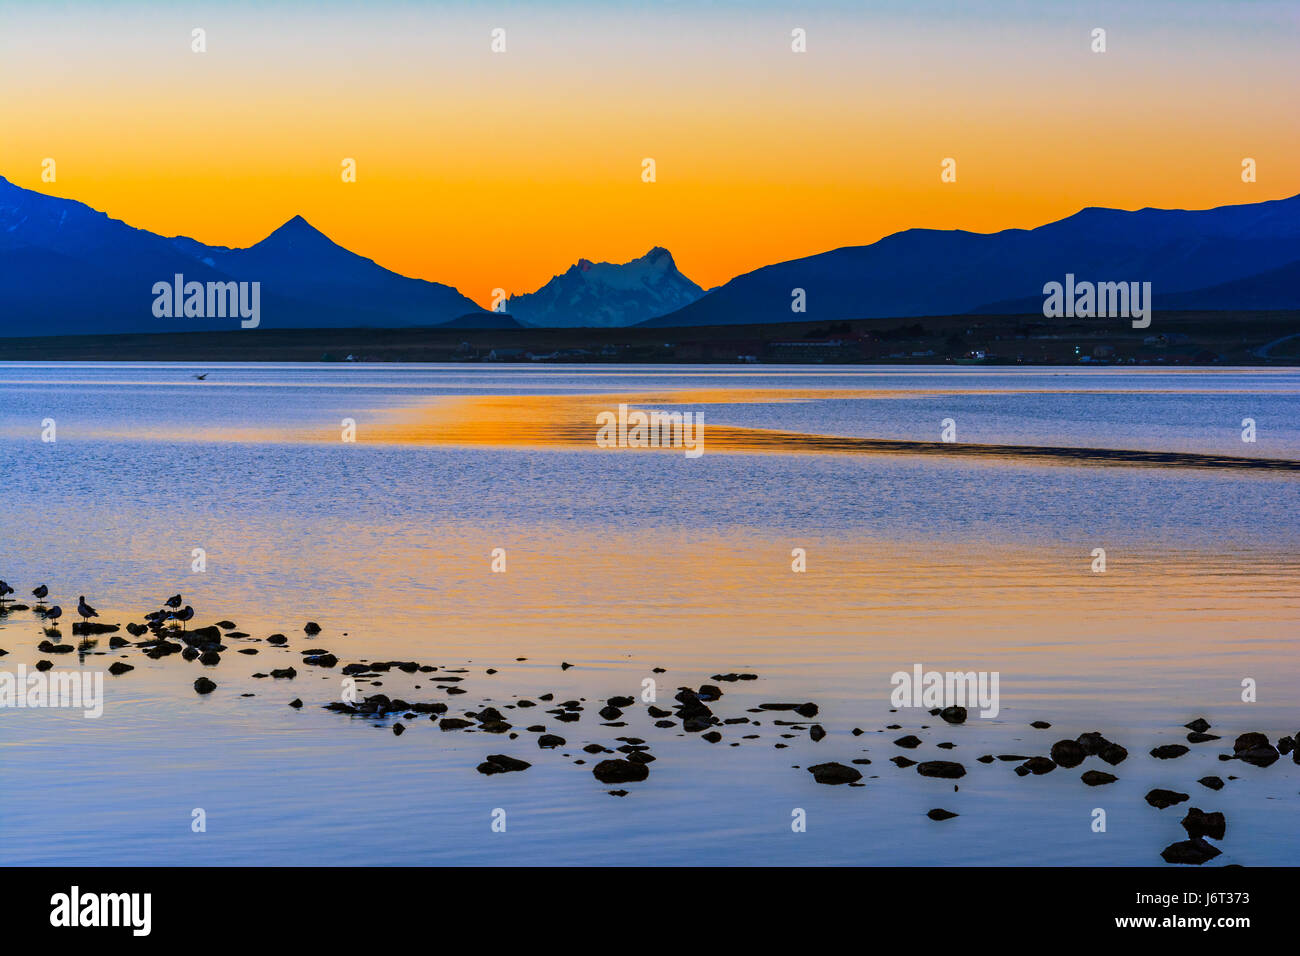 Der Golfregion Almirante Montt, Puerto Natales, Chile - Pazifik Gewässer in Chile, Patagonien, Magallanes Region bei Sonnenuntergang Stockfoto